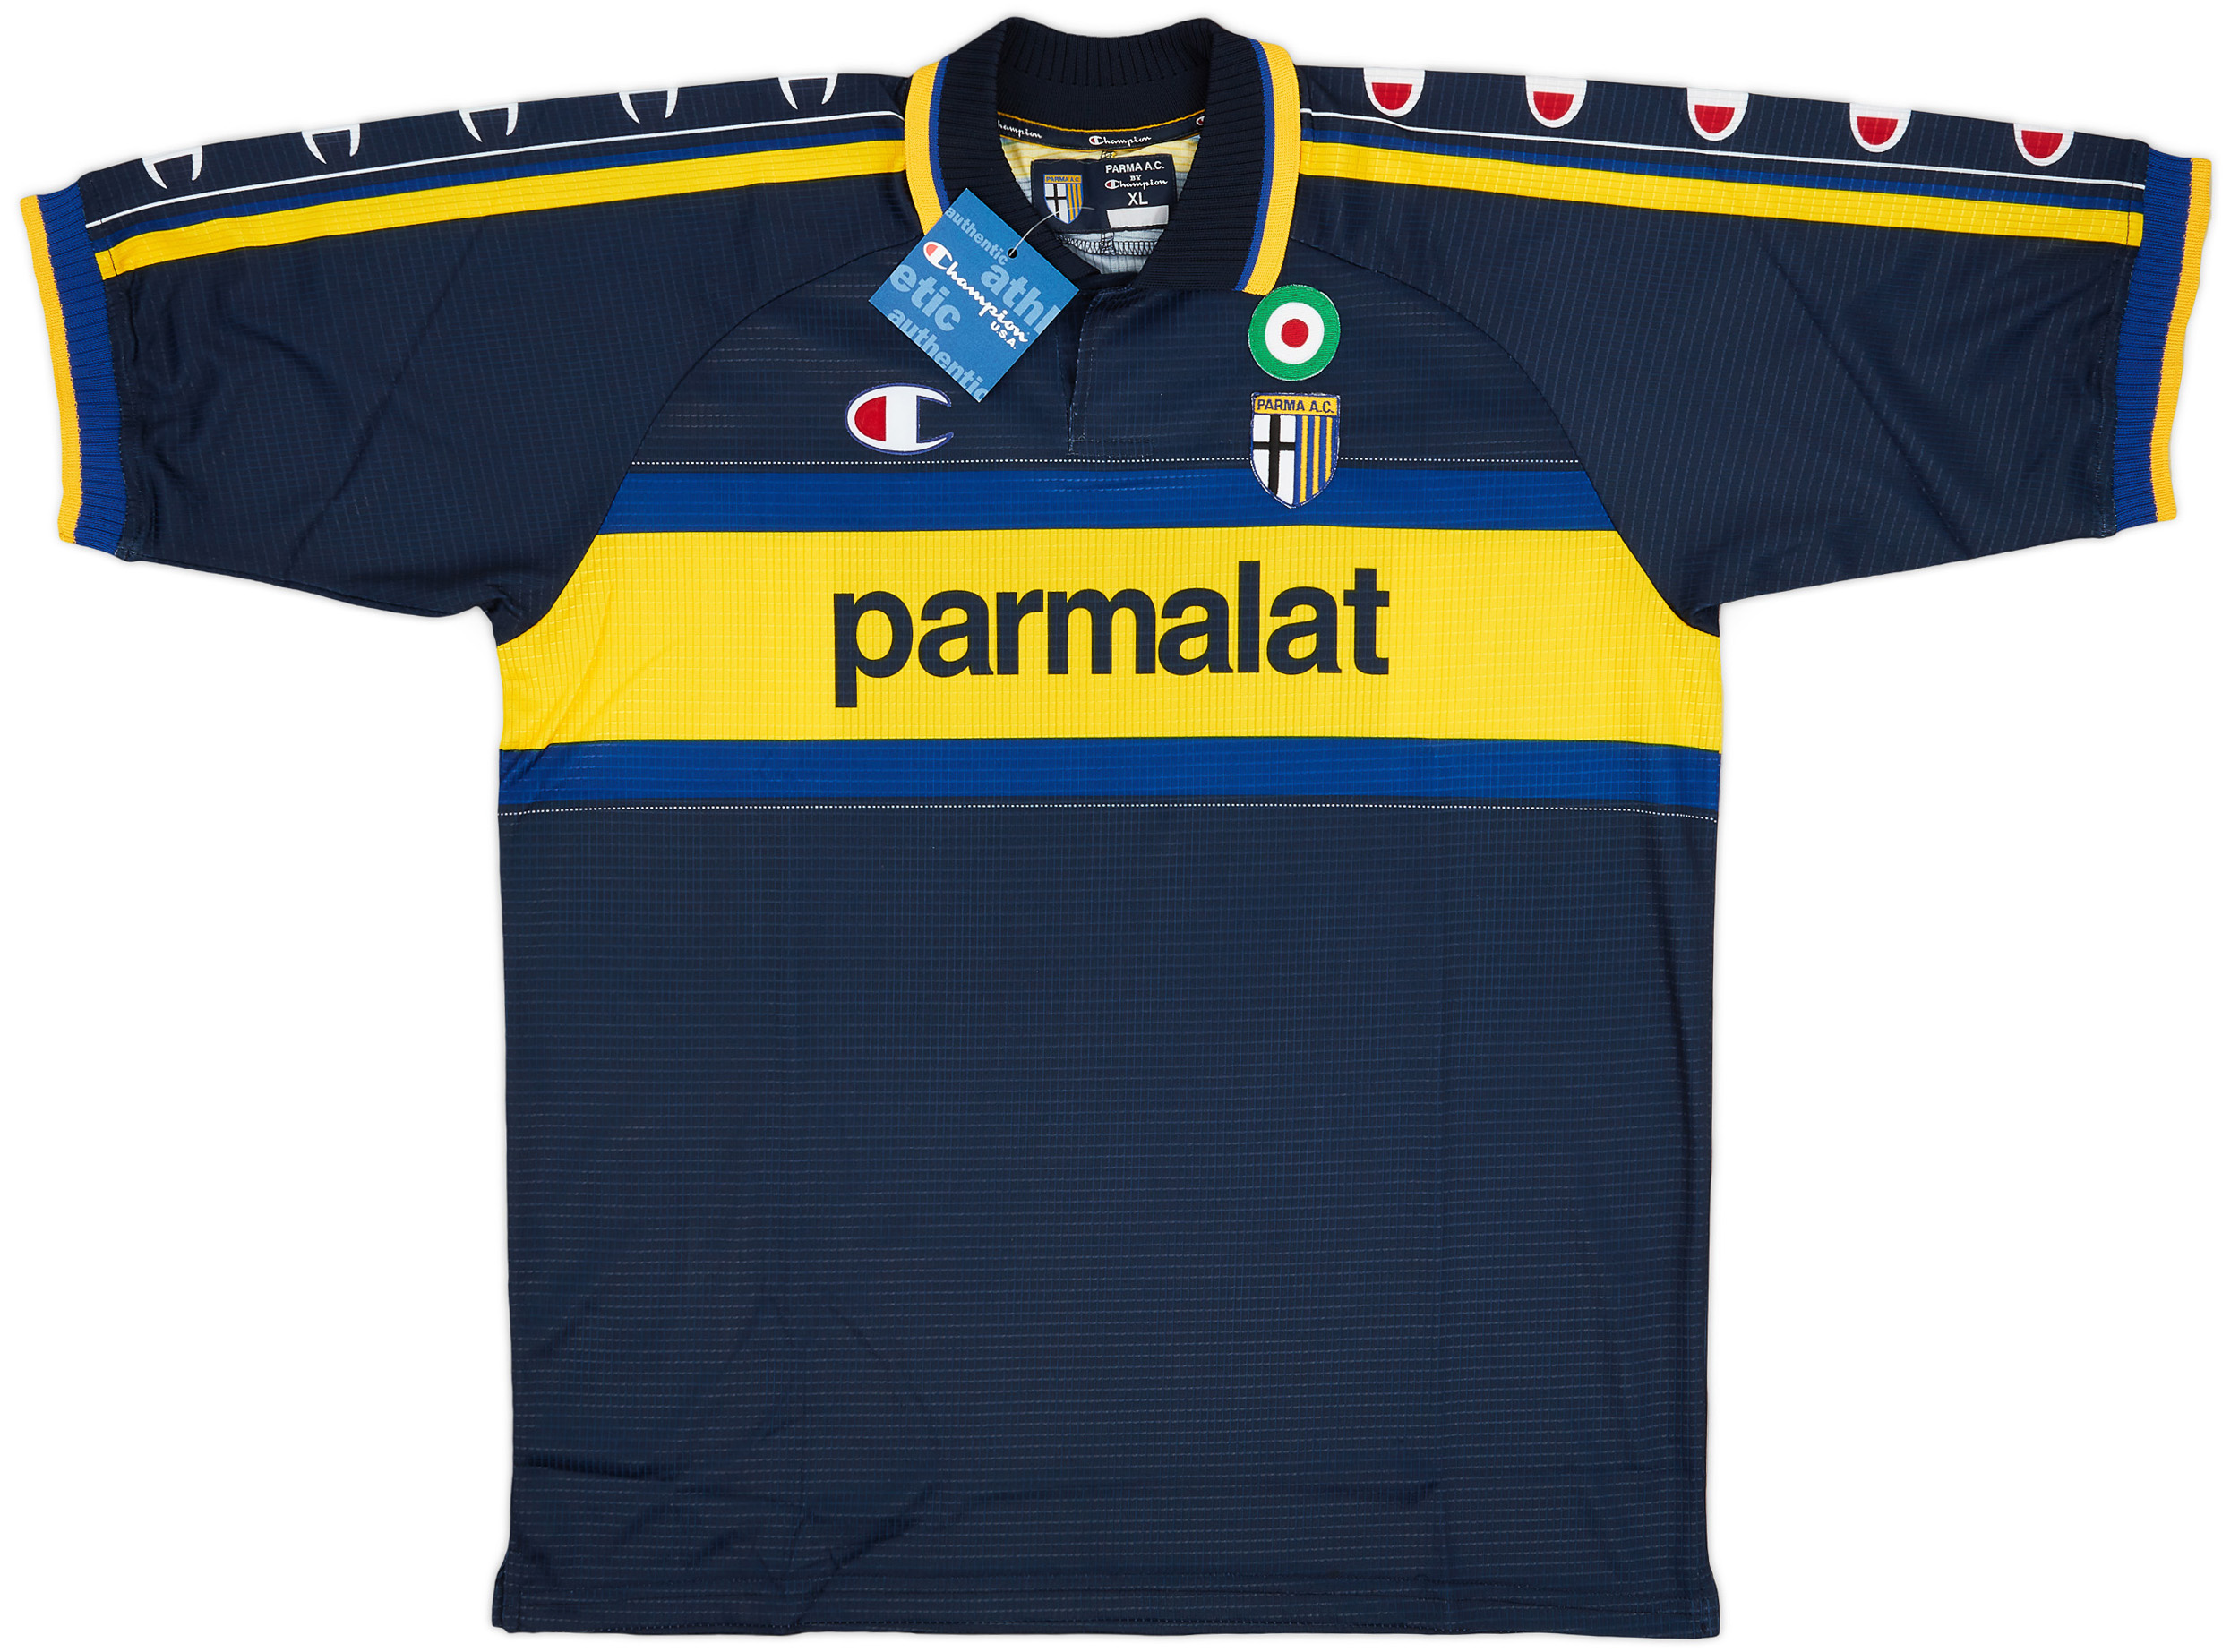 Retro Parma Shirt